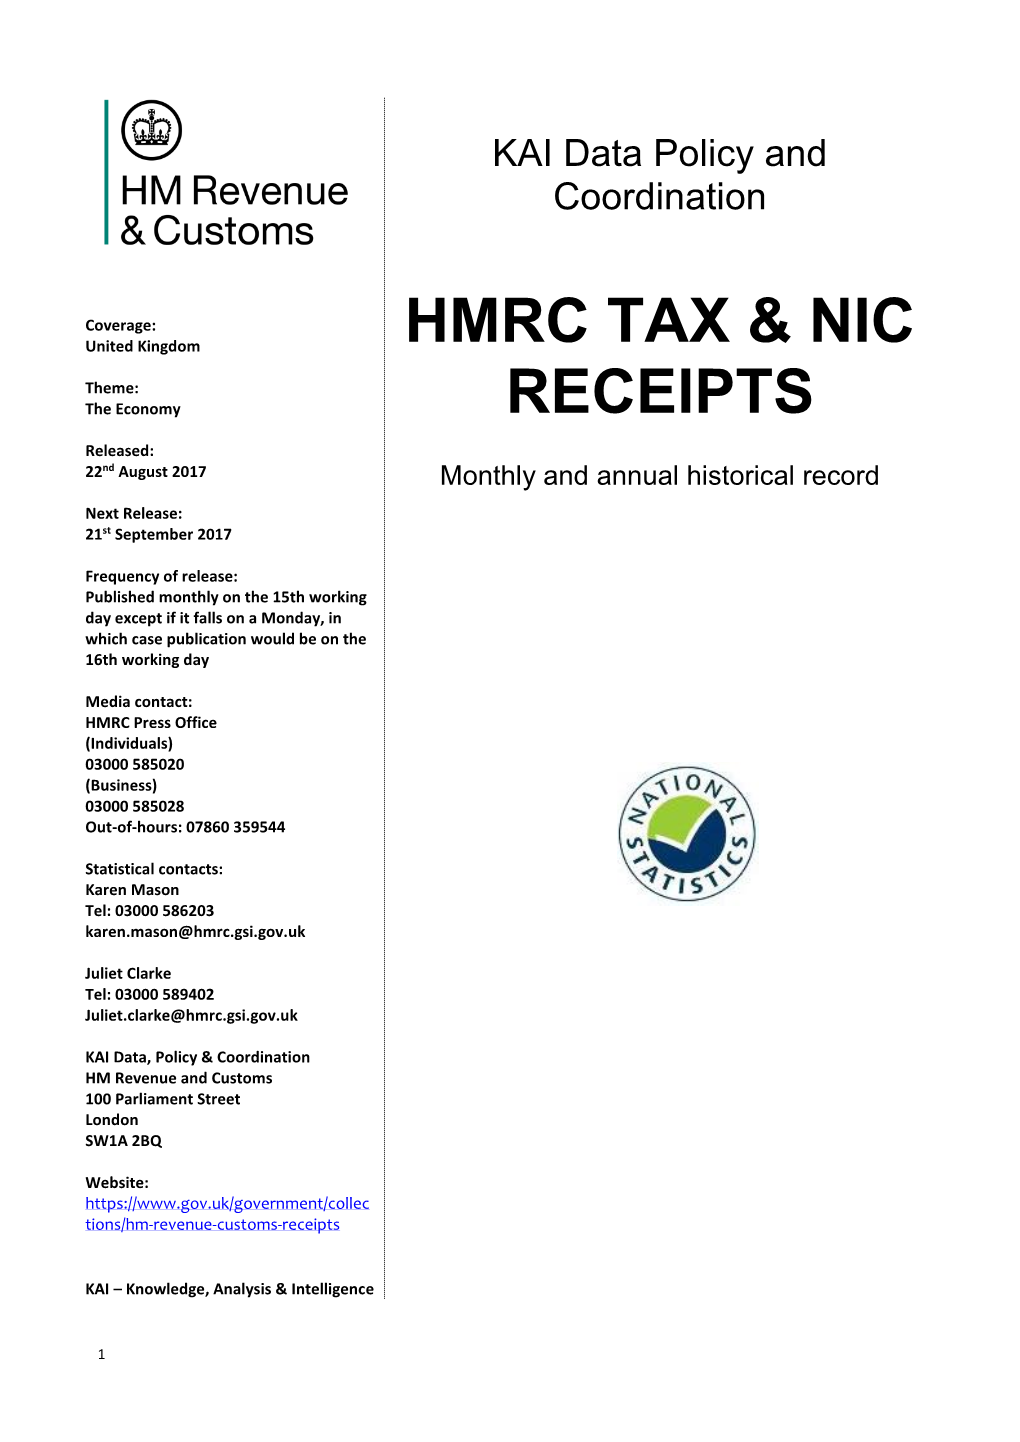 Hmrc Tax & Nic Receipts